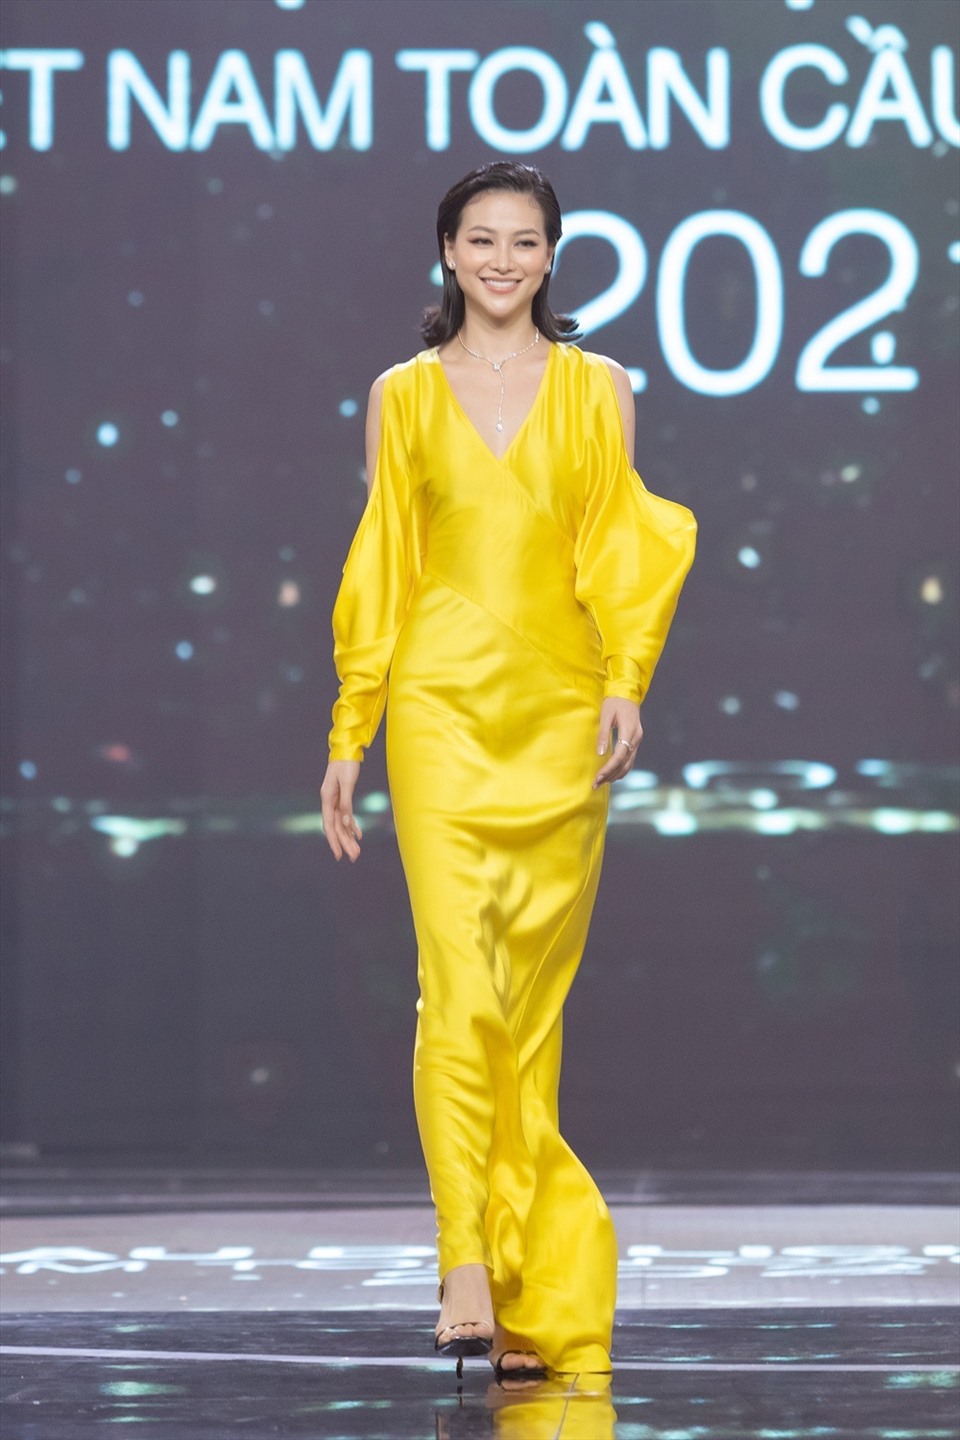 Hoa hậu Phương Khánh chọn thiết kế váy vàng bó sát, khoe vóc dáng thon thả tại sự kiện. Cô gây ấn tượng bởi mái tóc ngắn quyến rũ. Trước đó, người đẹp gây bất ngờ khi hiến mái tóc dài cho bệnh nhân ung thư.